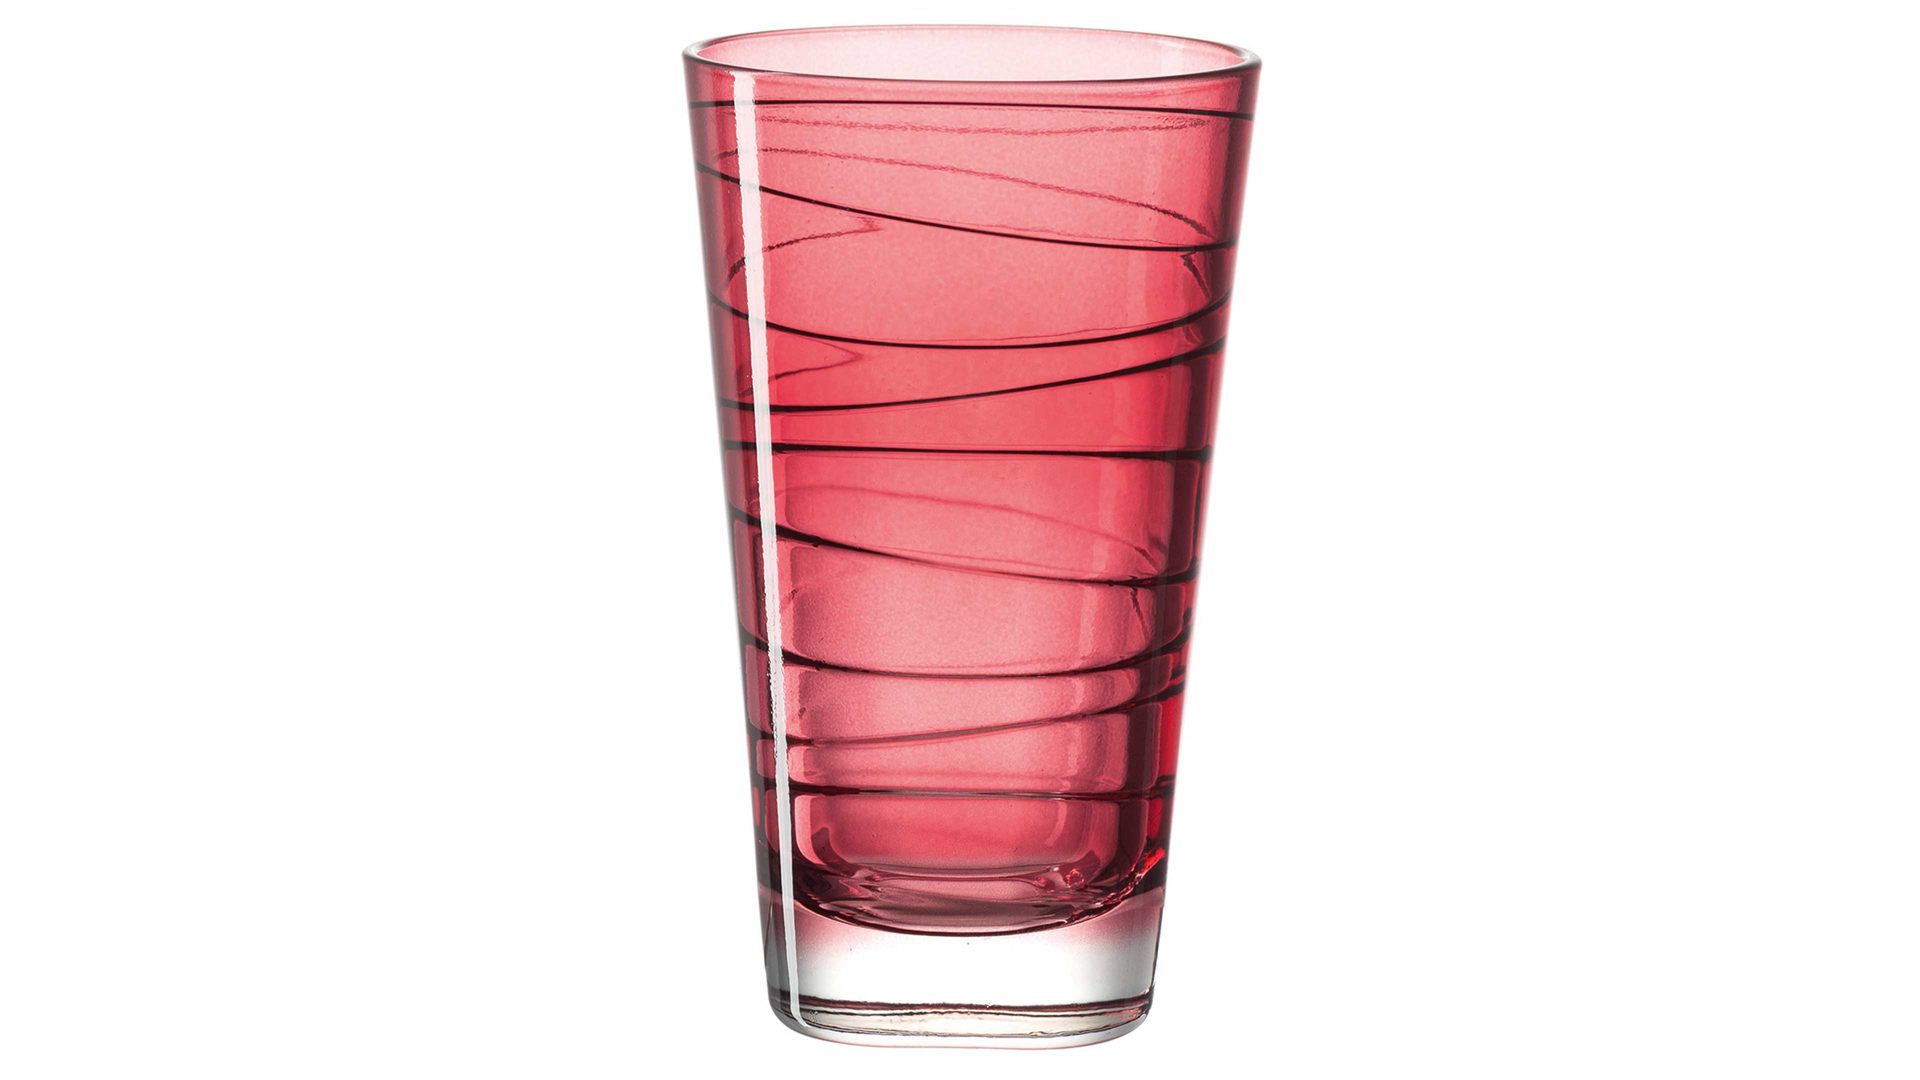 Wasserglas Leonardo | glaskoch aus Glas in Dunkelrot LEONARDO großer Glasbecher Vario rubinrotes Strukturlackglas - ca. 200 ml Nutzinhalt